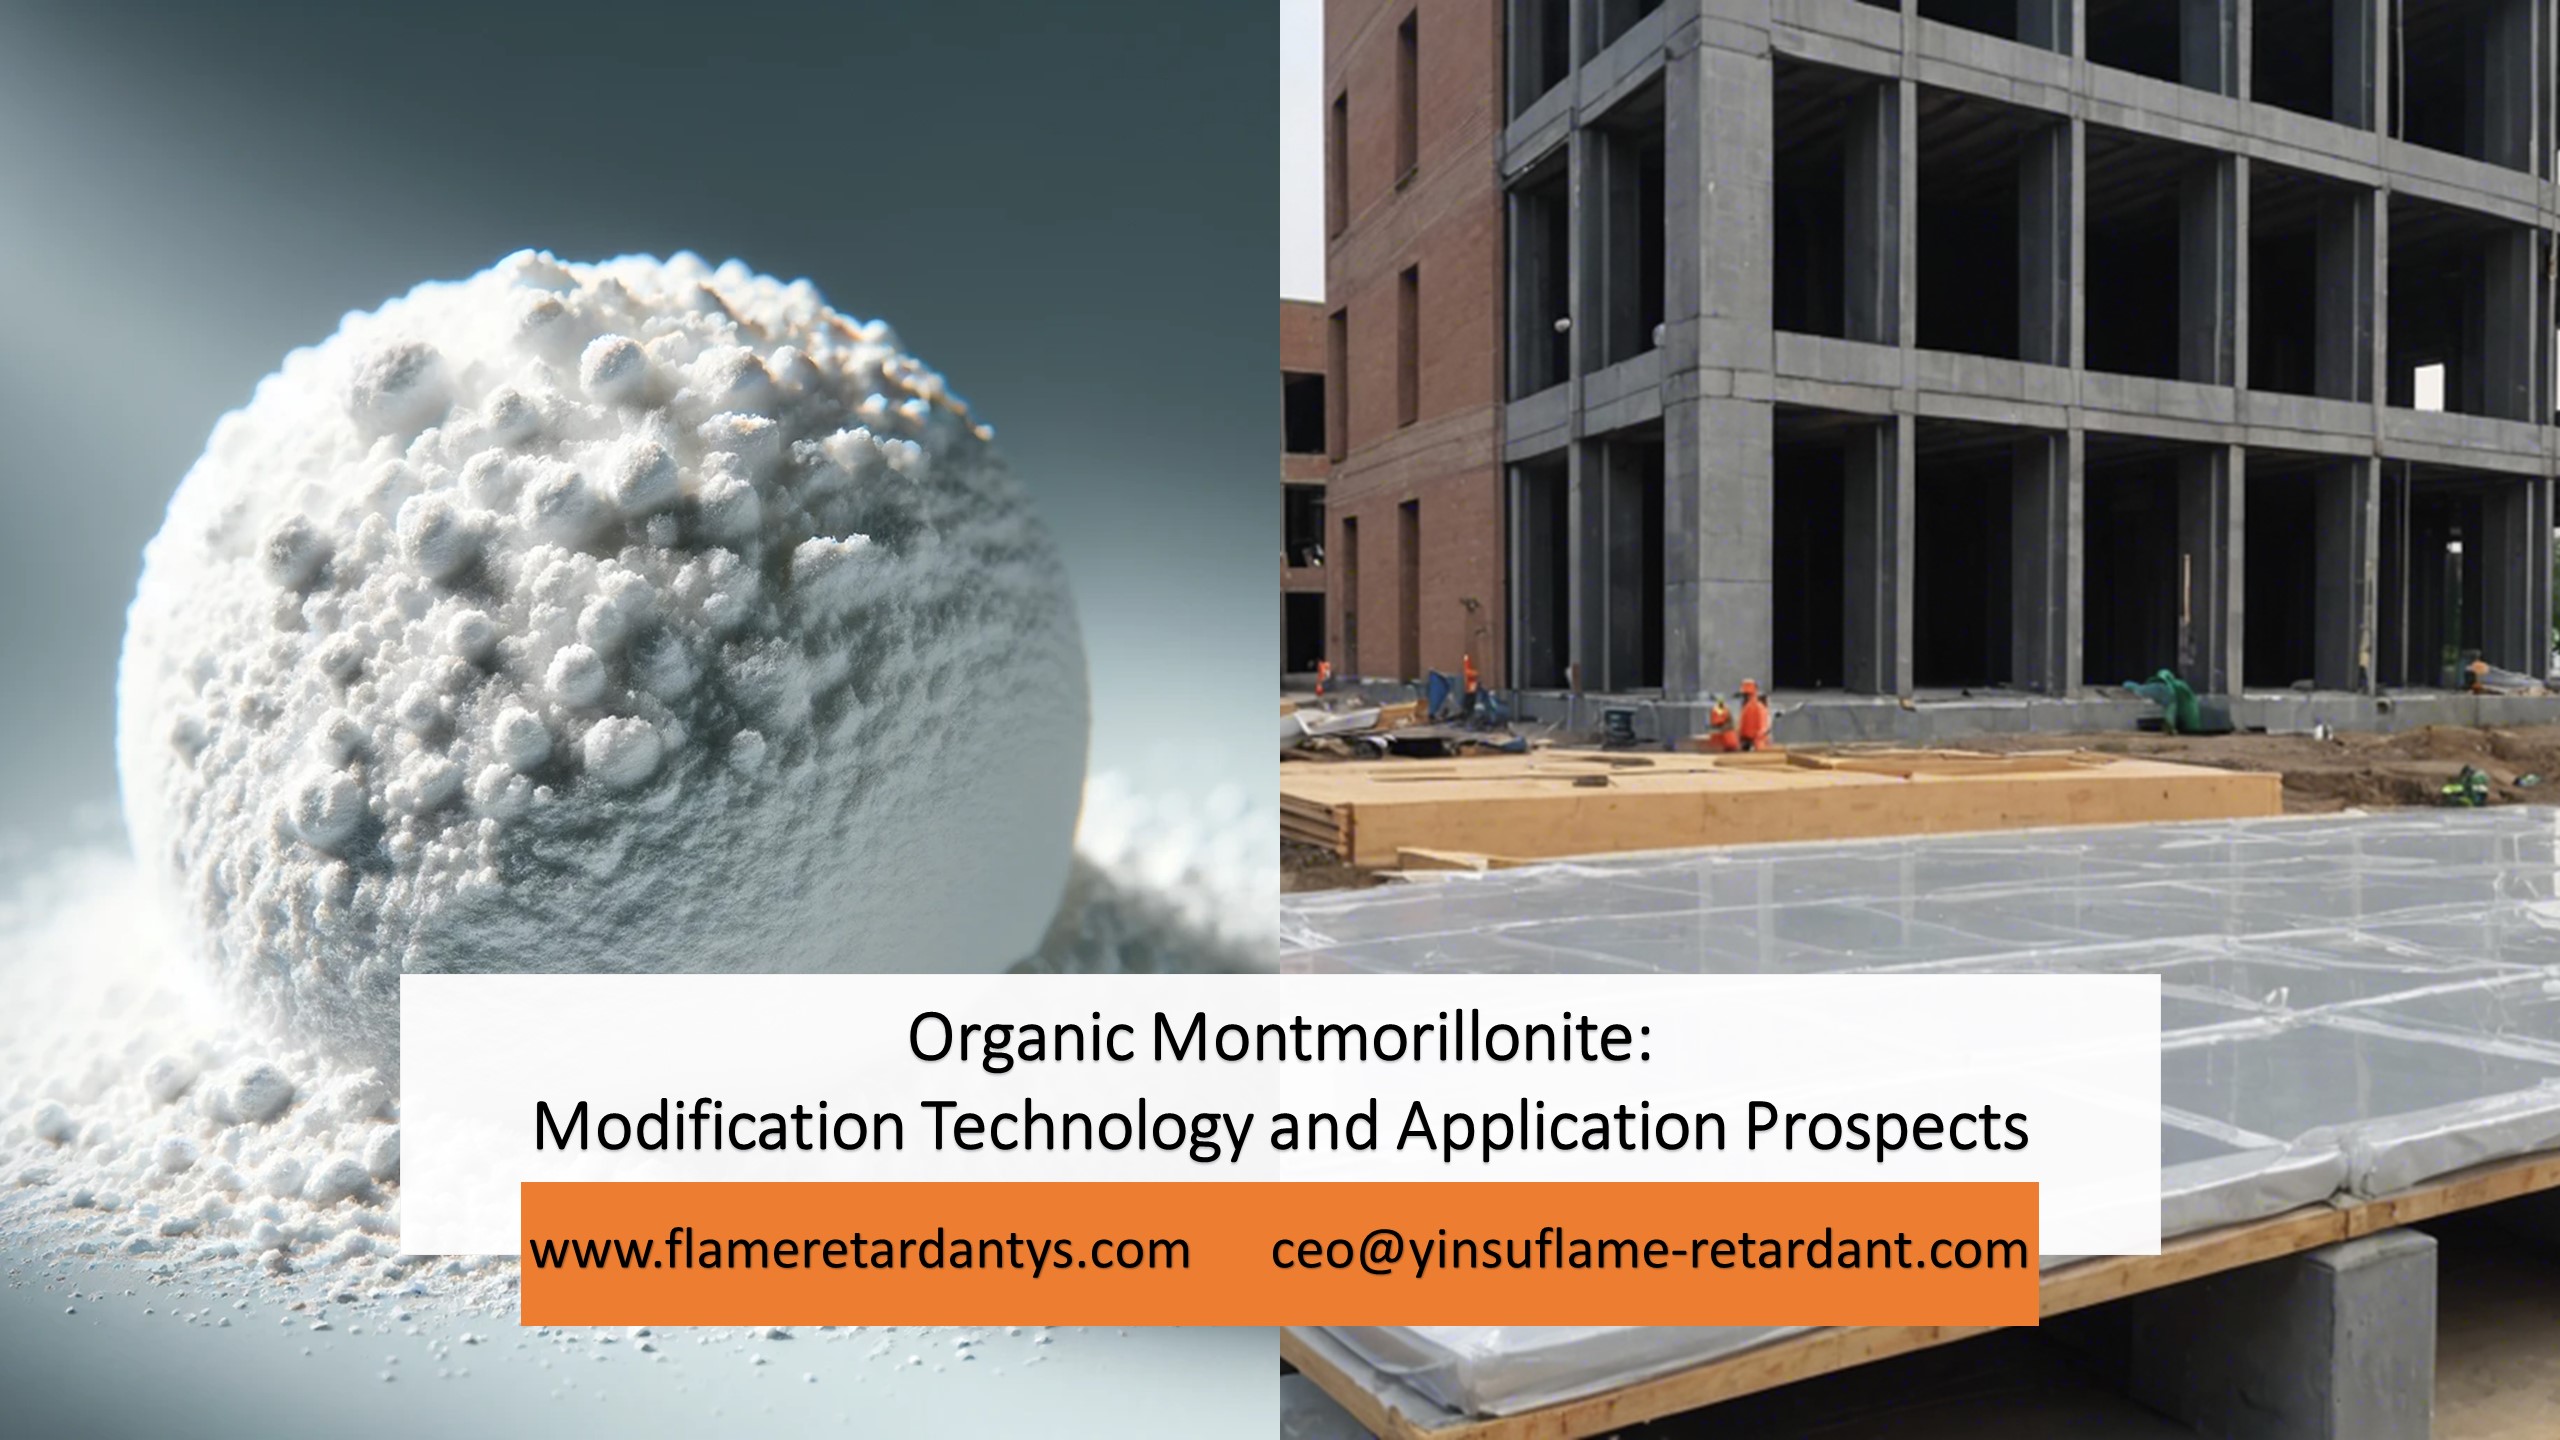 5.9 Technologie de modification de la montmorillonite organique et perspectives d’application